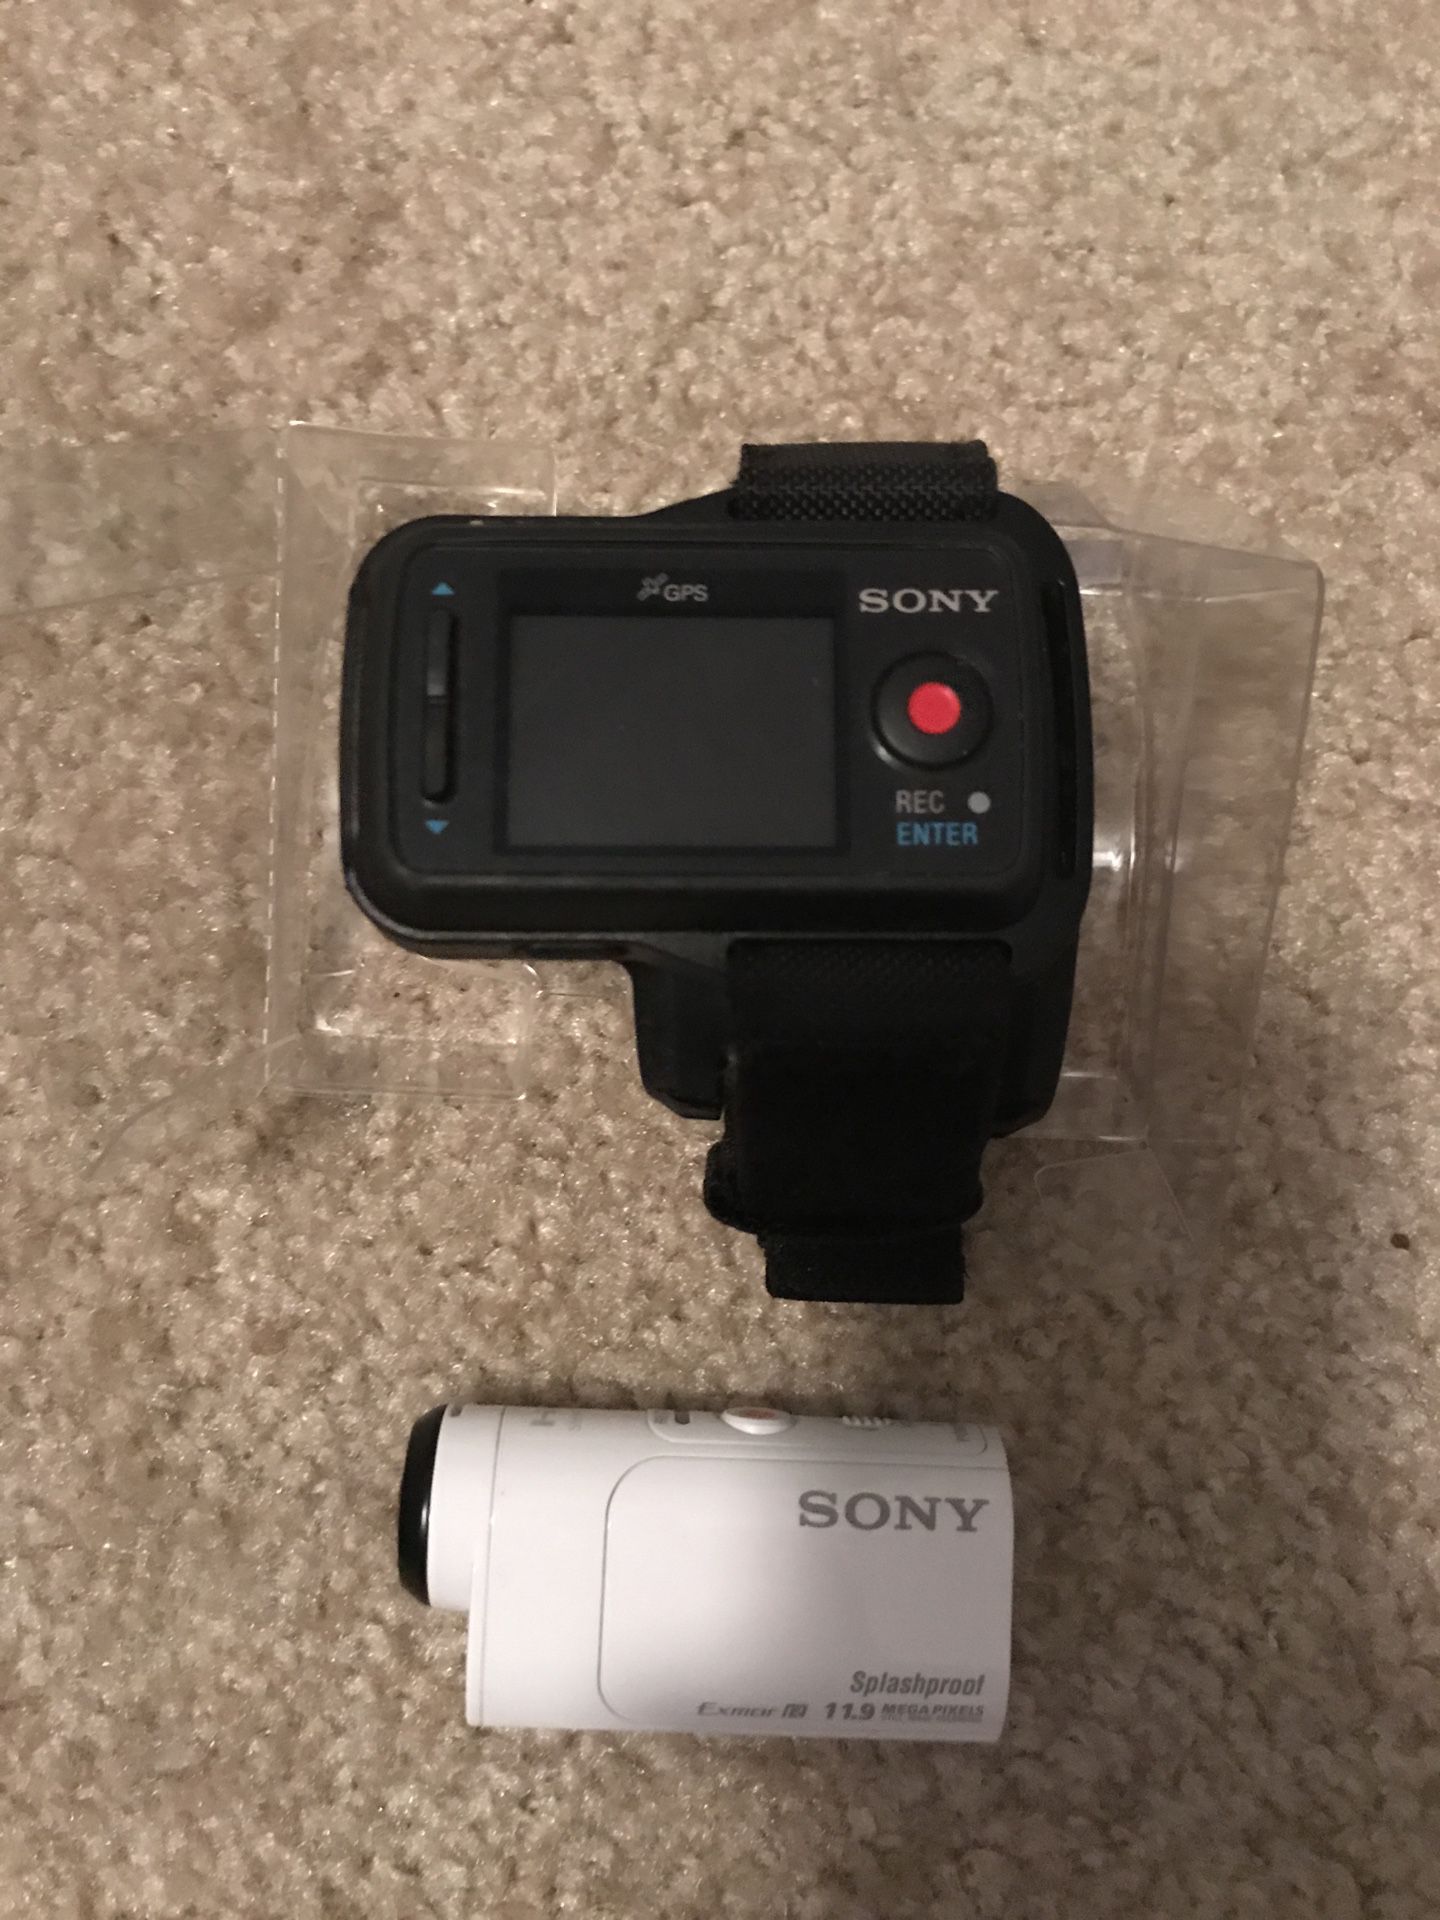 Sony action camera mini HDR-AZ1VR